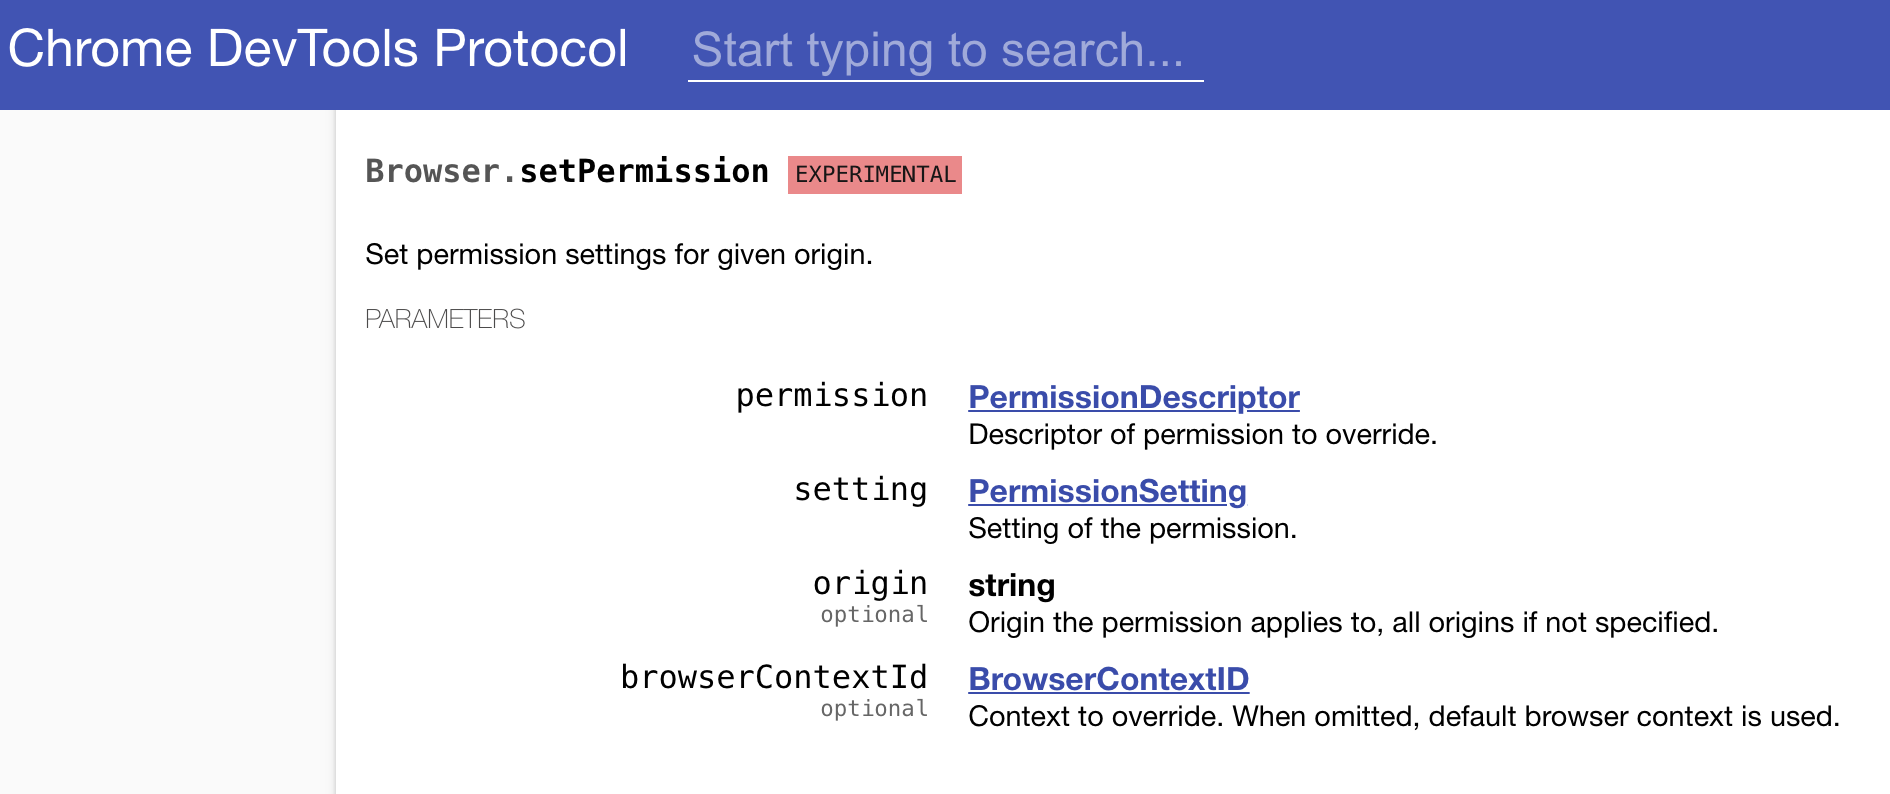 Browser.setPermission command